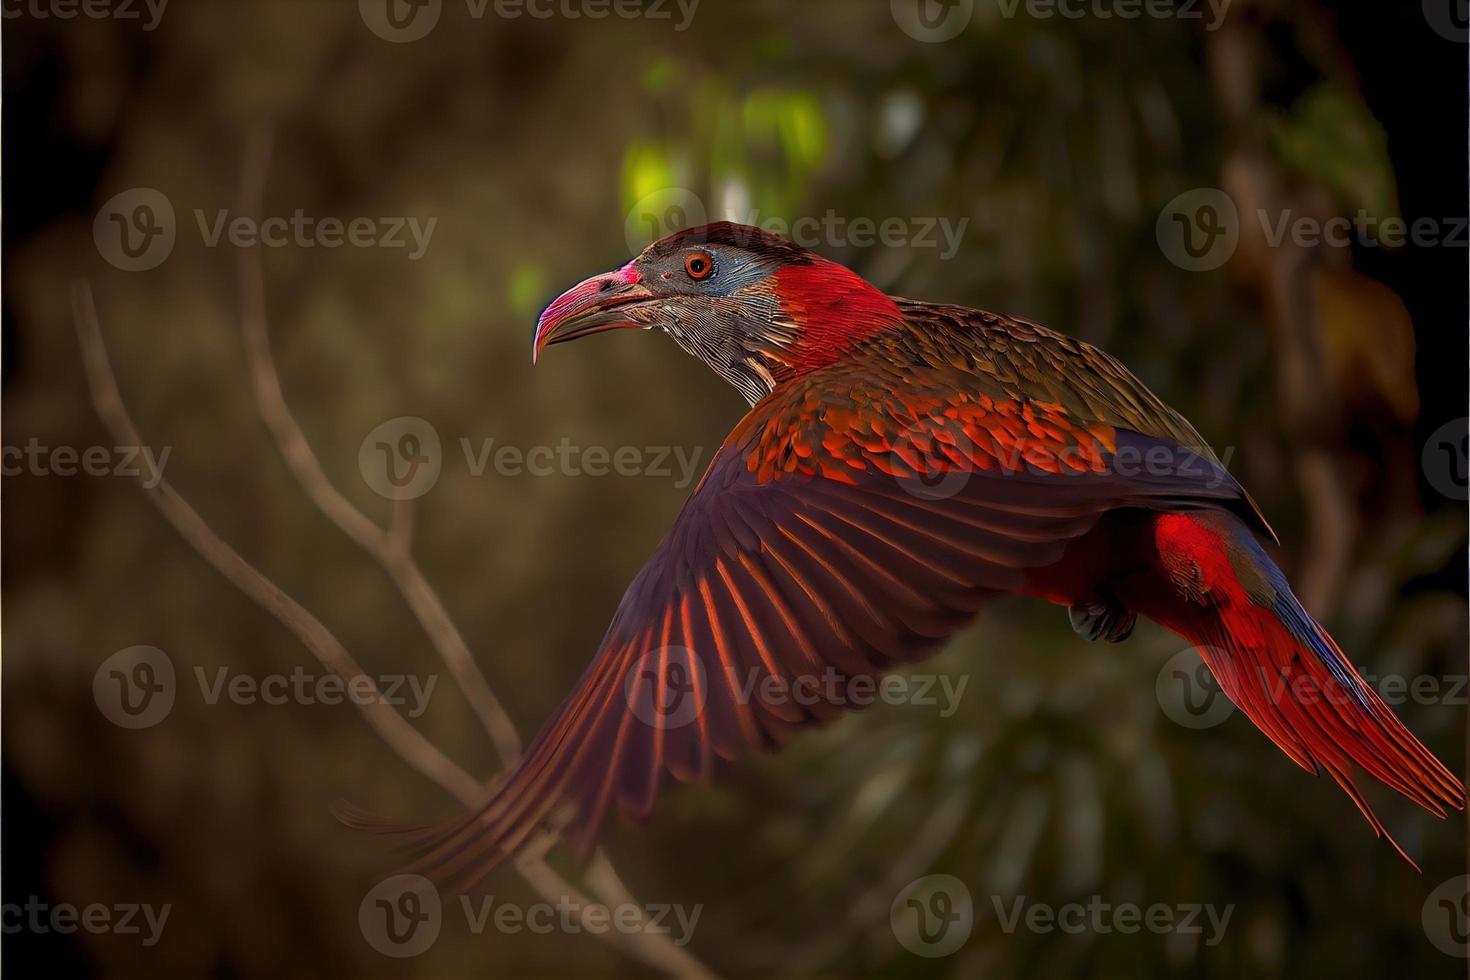 vogel van zuiden Amerika in de natuur leefgebied foto